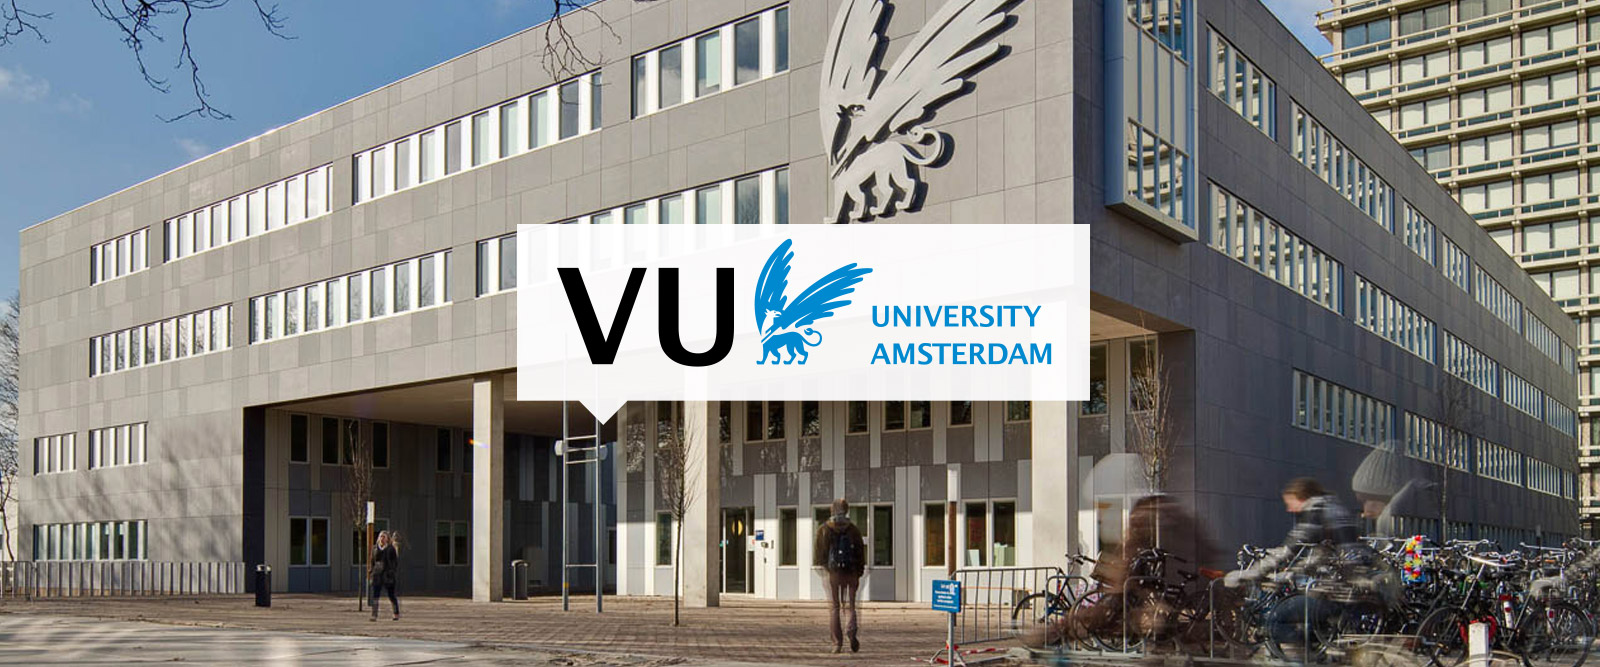 [Các trường đại học tại Hà Lan] - Giới thiệu trường Đại học Vrije (Vrije Universiteit Amsterdam)